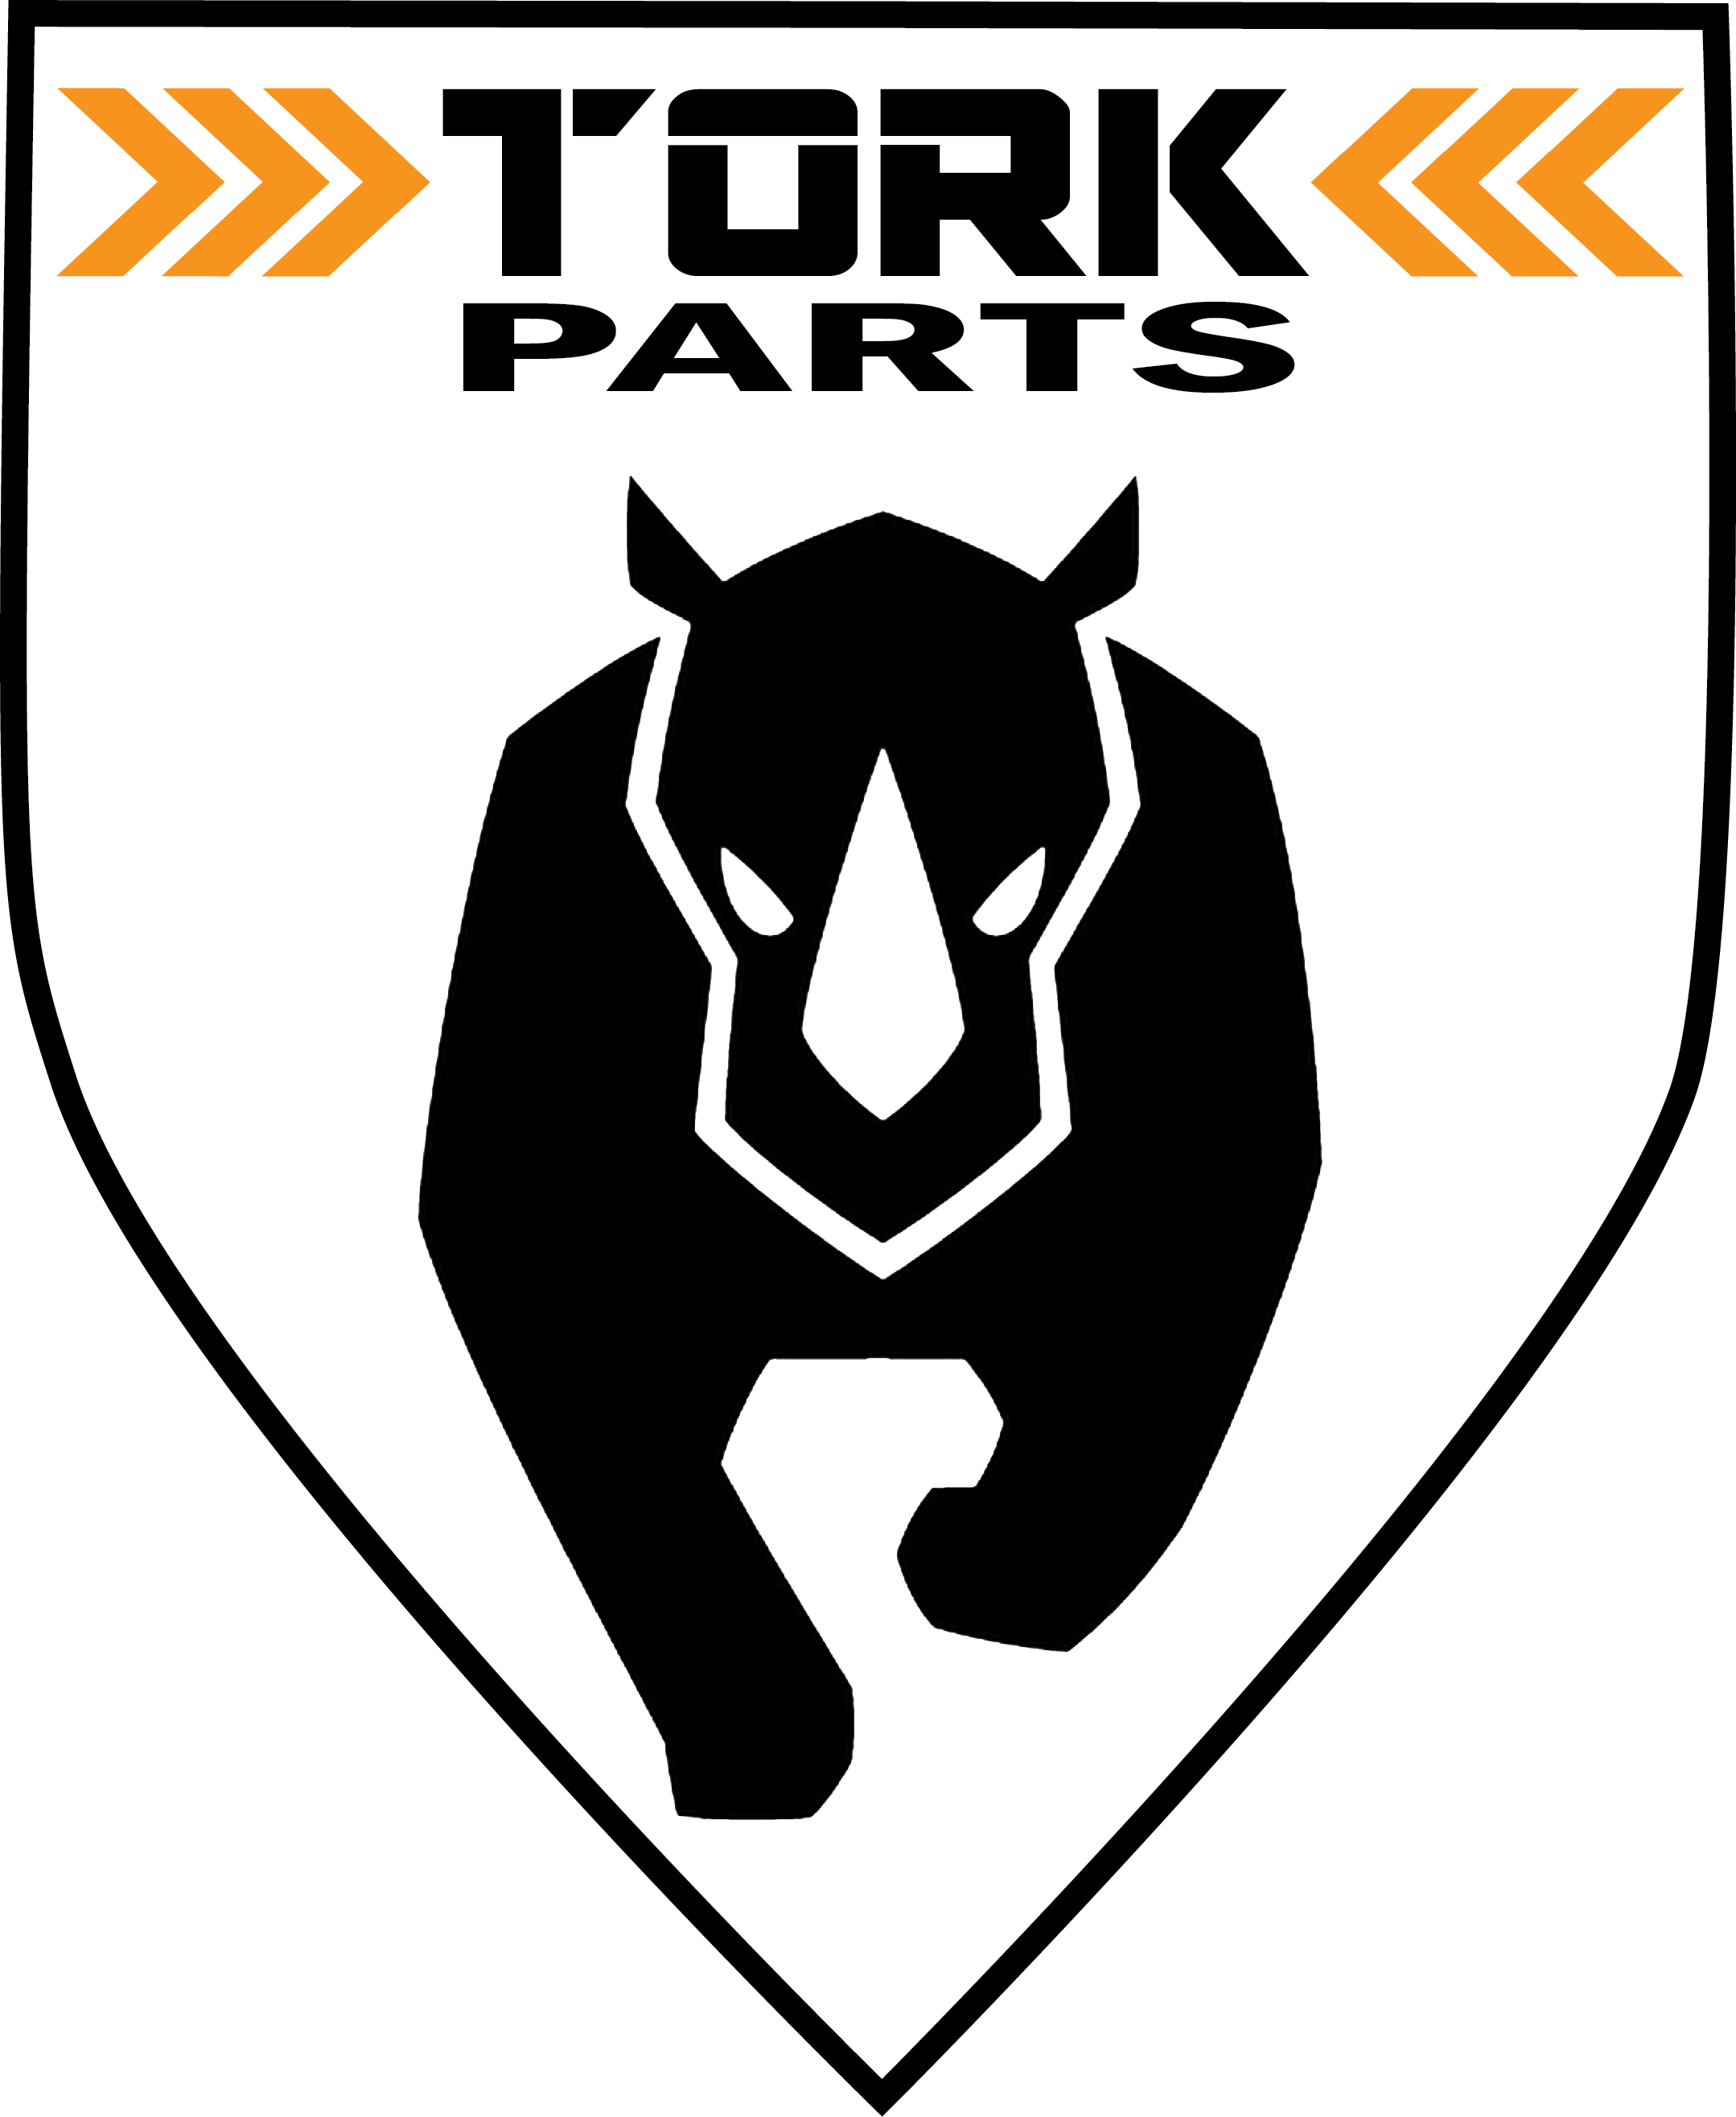 Truck Parts Canada - Auto Parts Shop Tork Parts